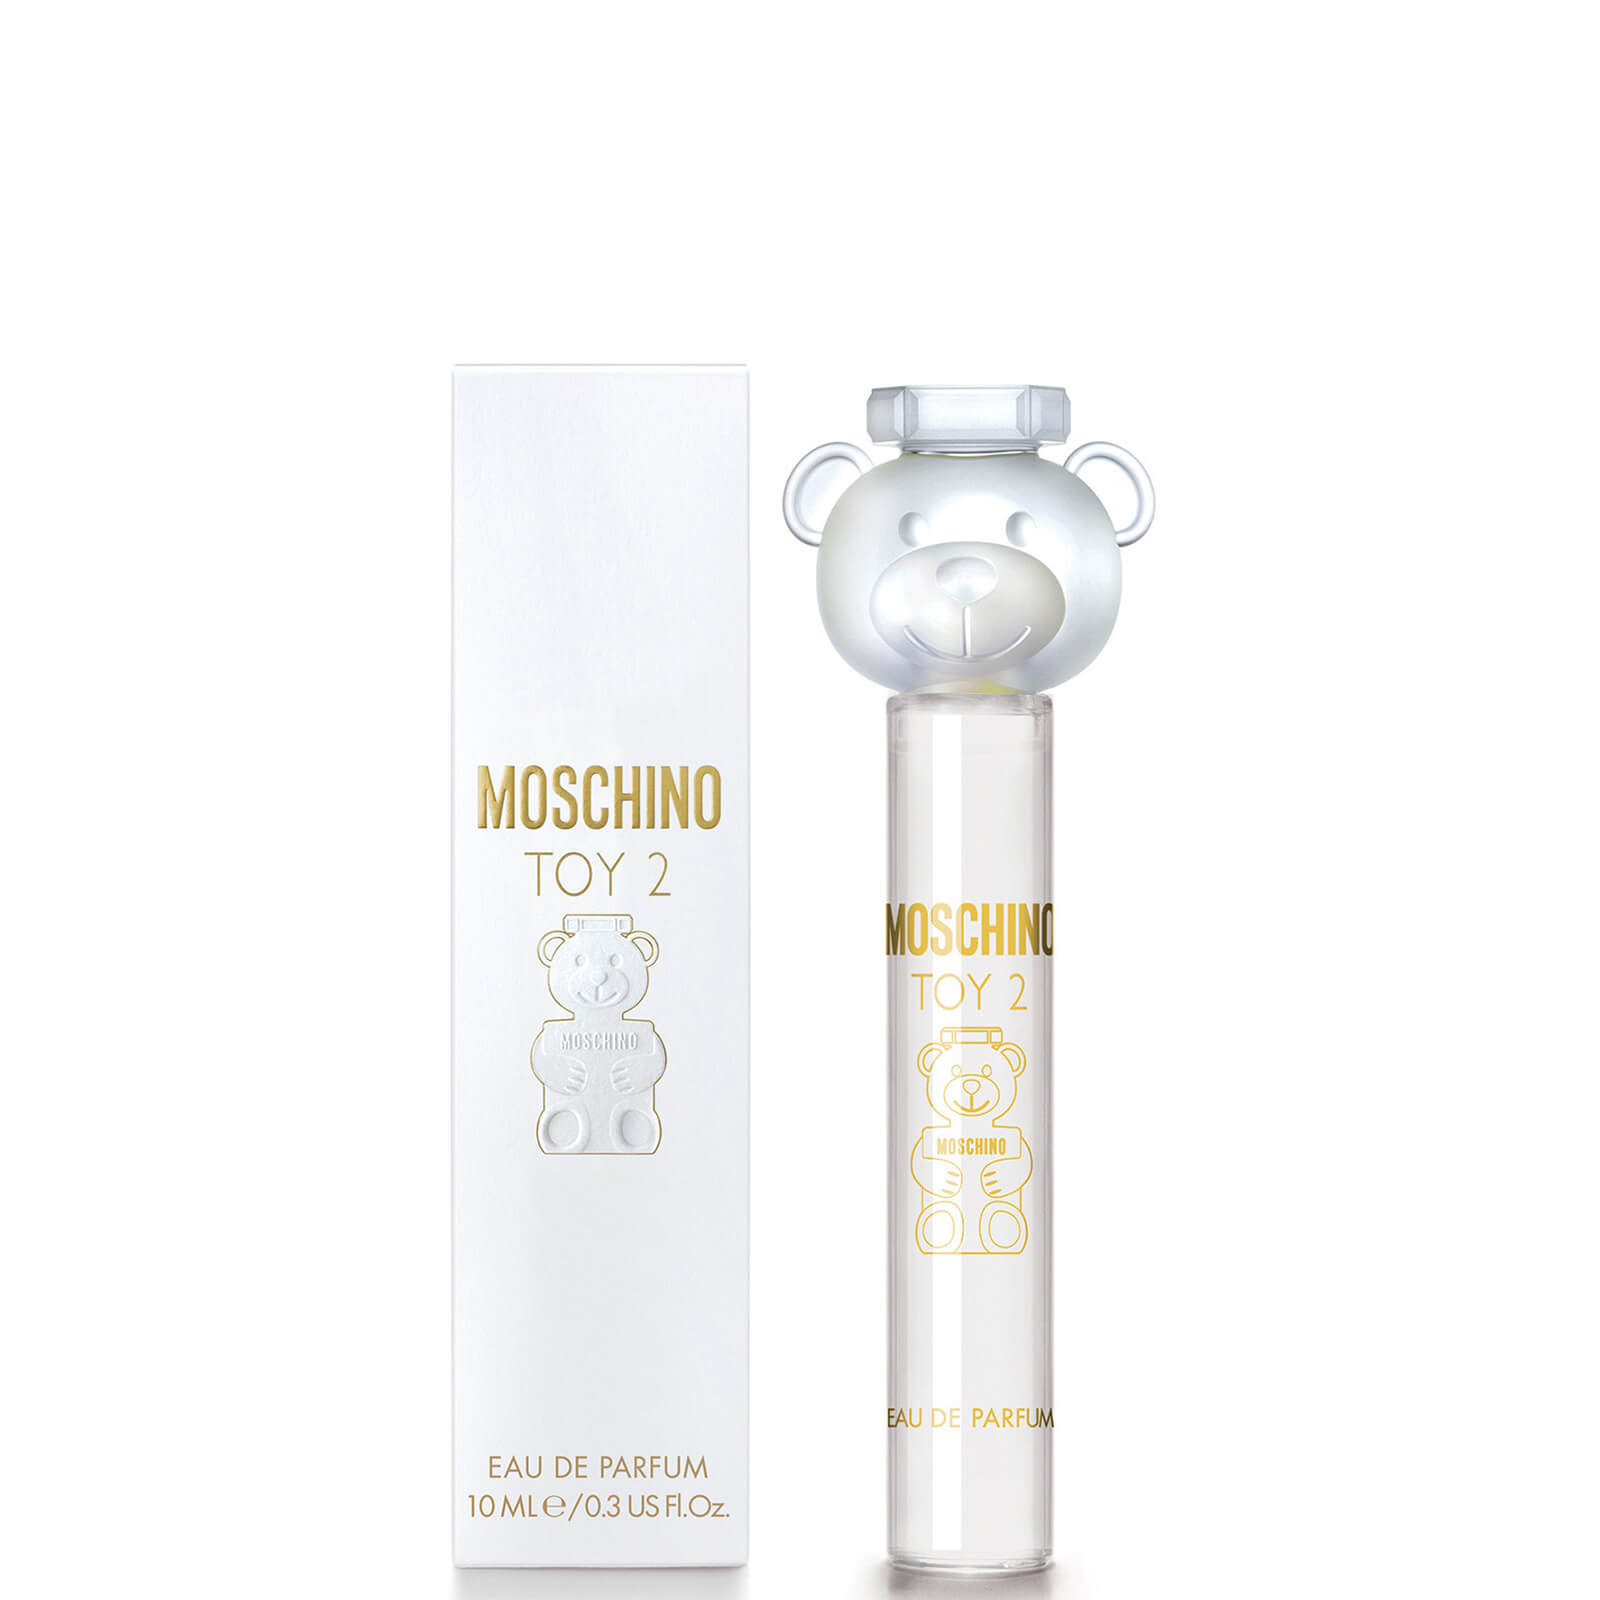 Moschino Toy2 Eau de Parfum 10ml